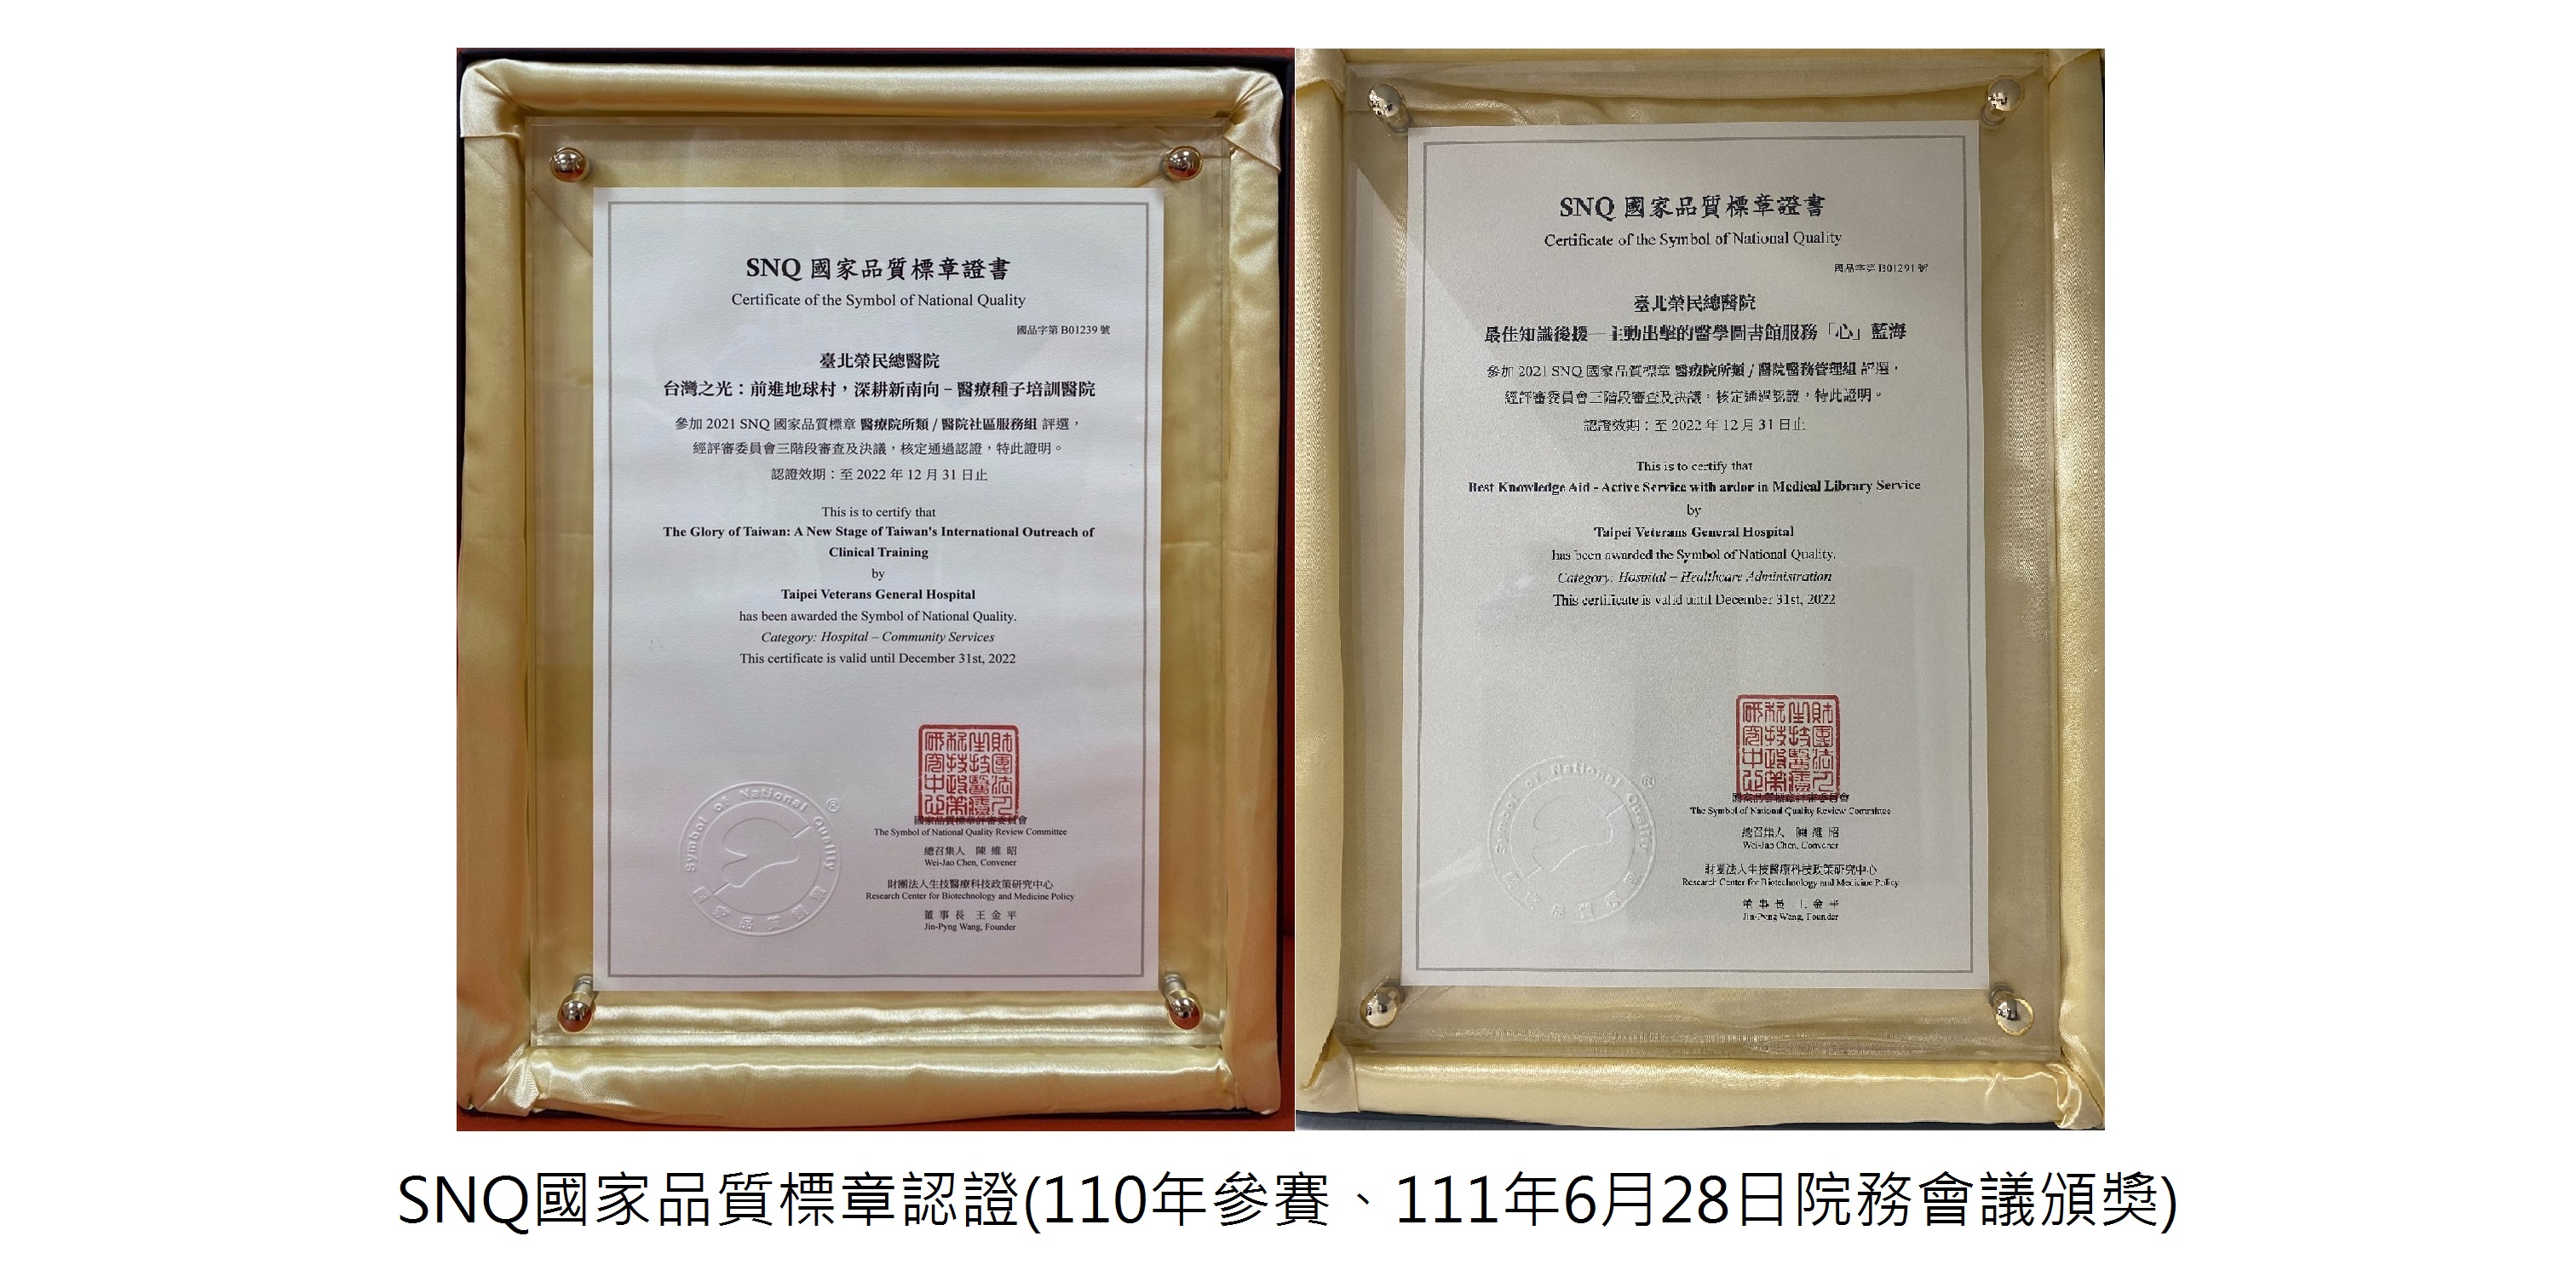 SNQ國家品質標章認證(110年參賽、111年6月28日院務會議頒獎)��